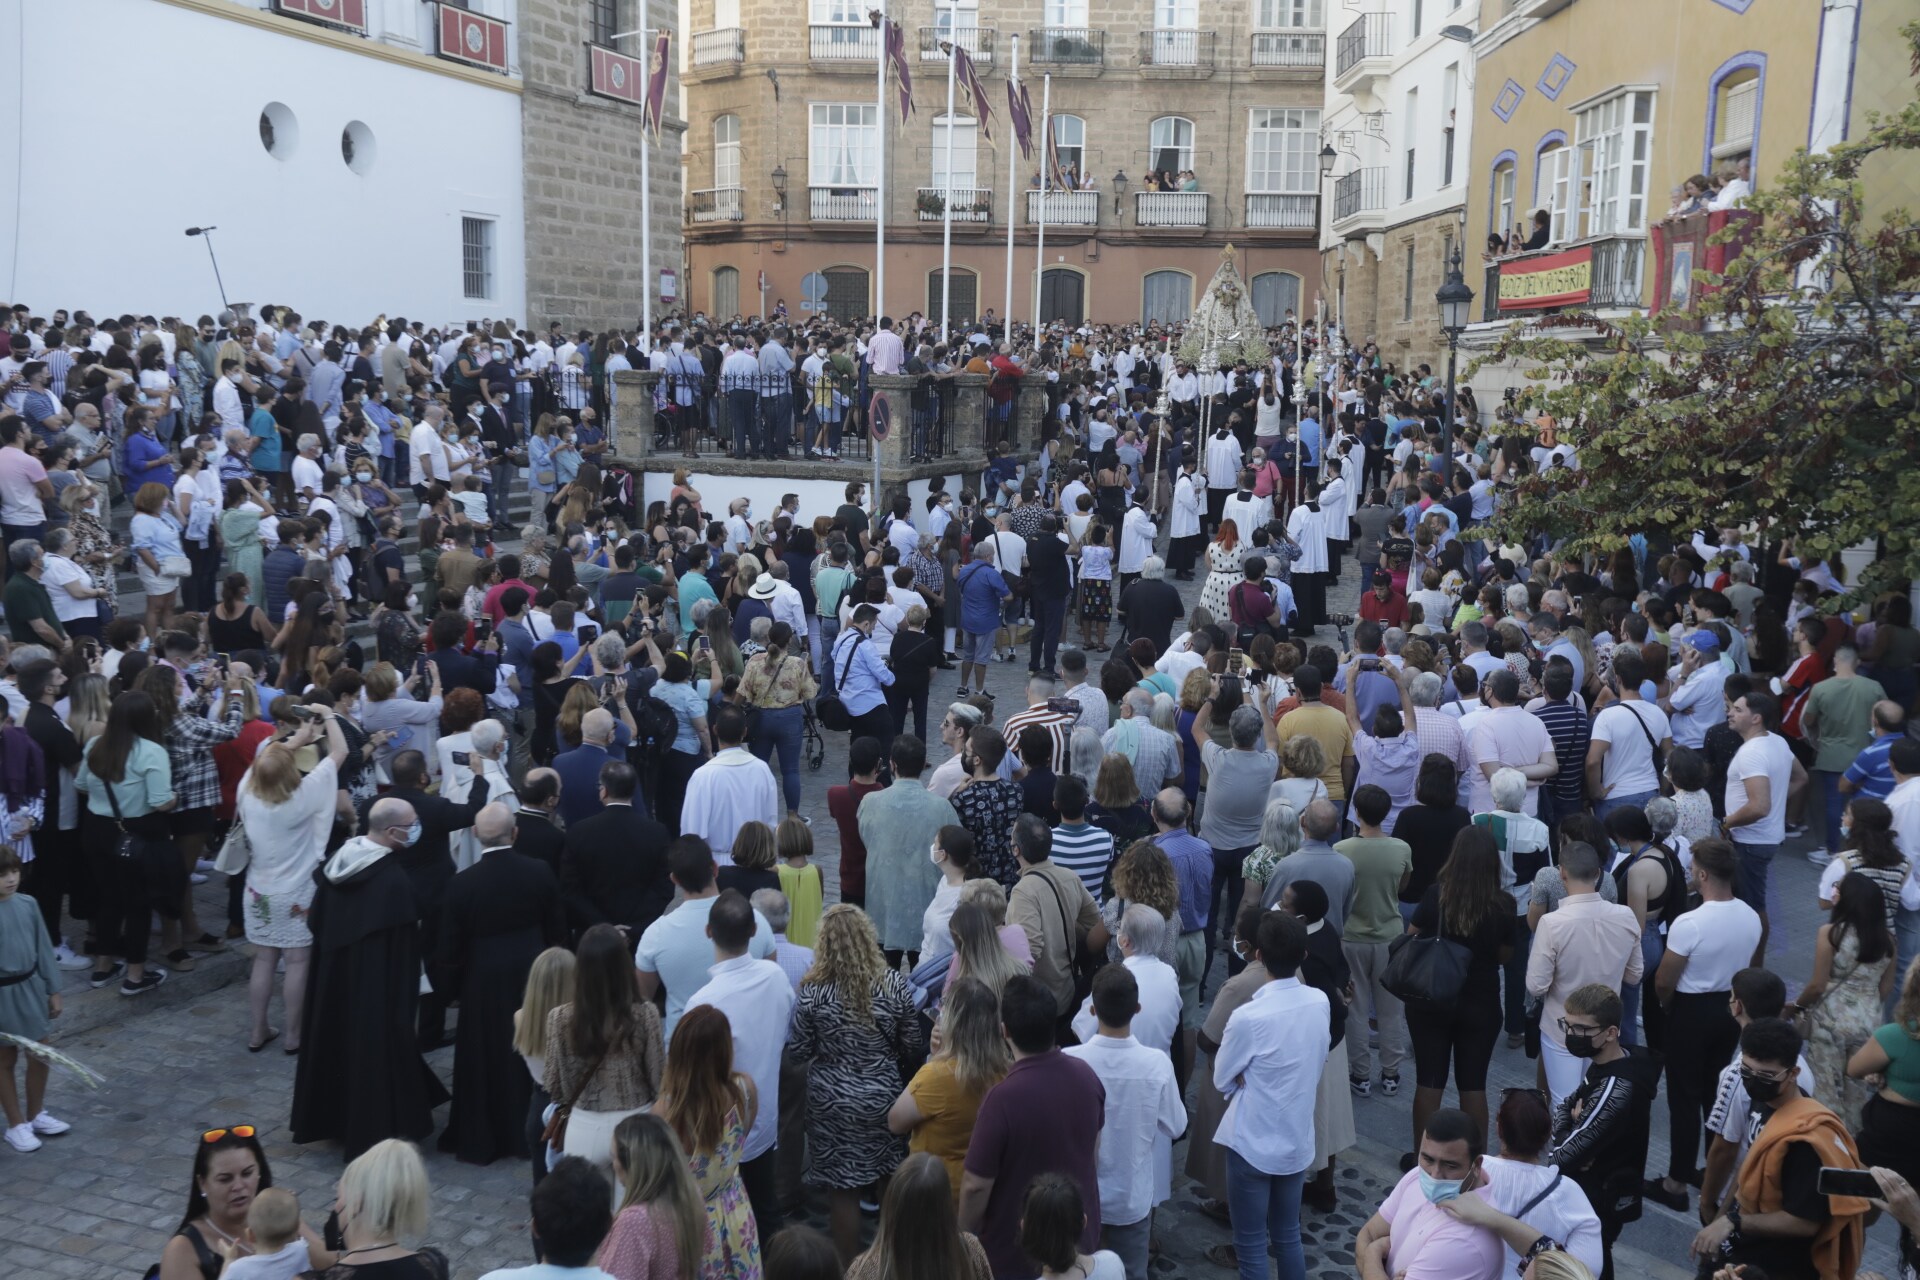 FOTOS: El fervor se desborda en Cádiz con la Virgen del Rosario